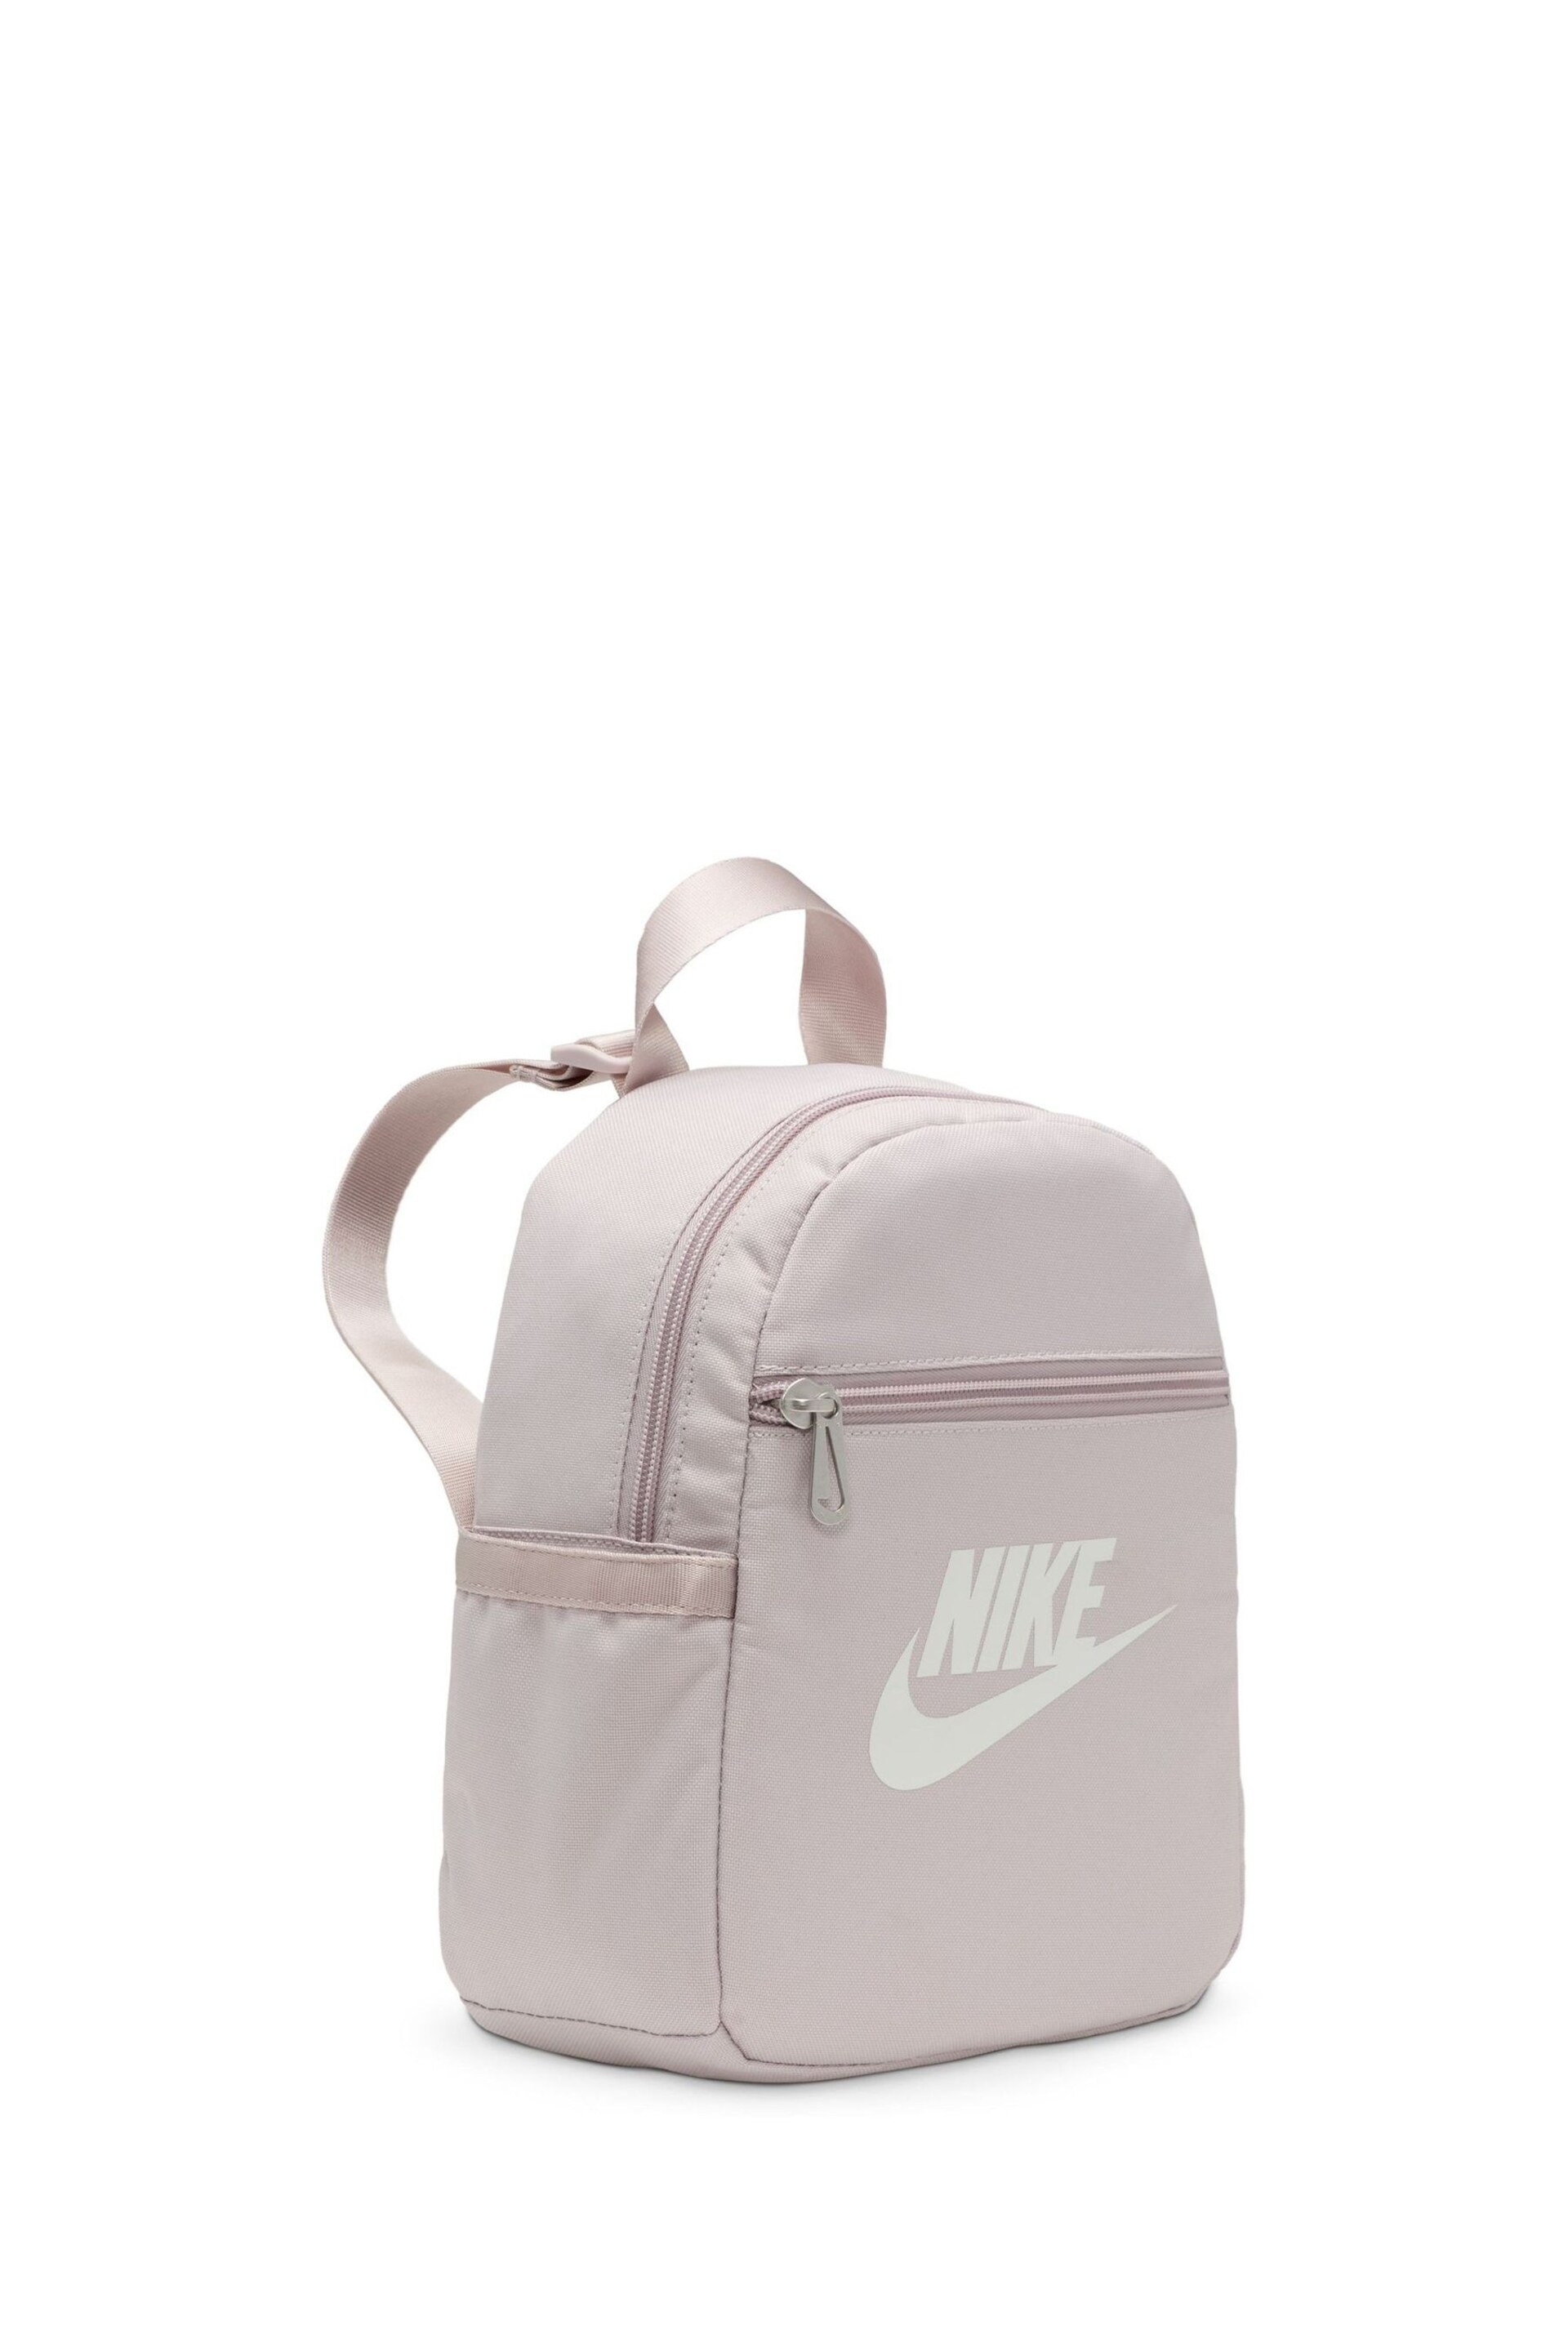 Nike Pink Mini Womens 6L Backpack - Image 7 of 12